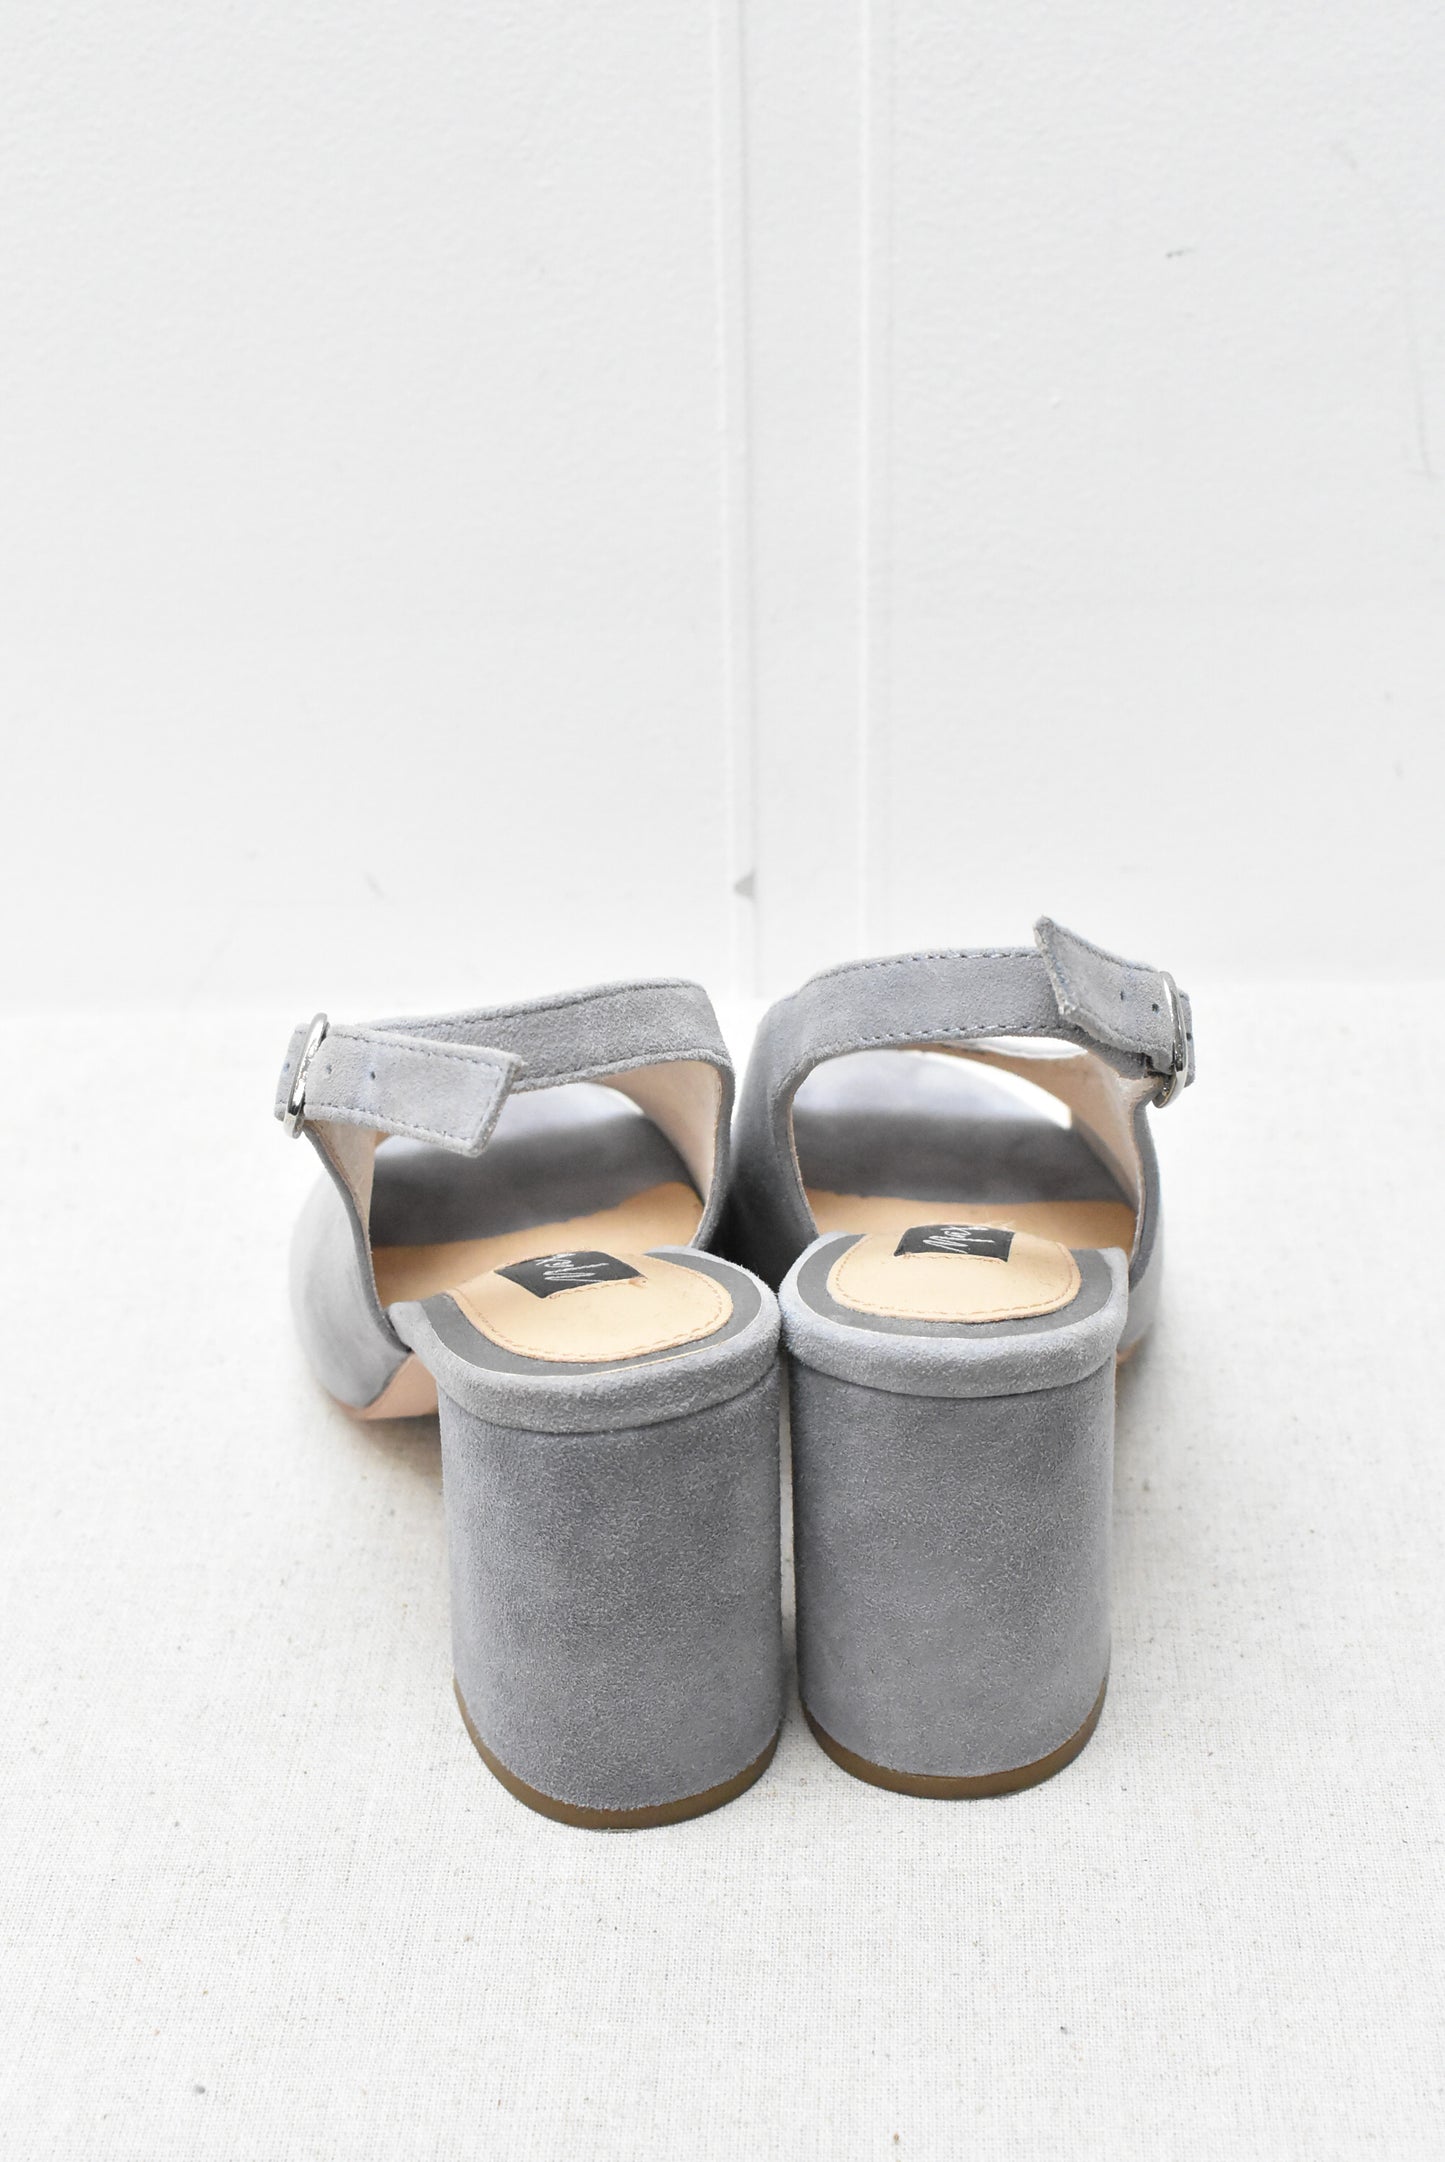 Grey suede shoes 37